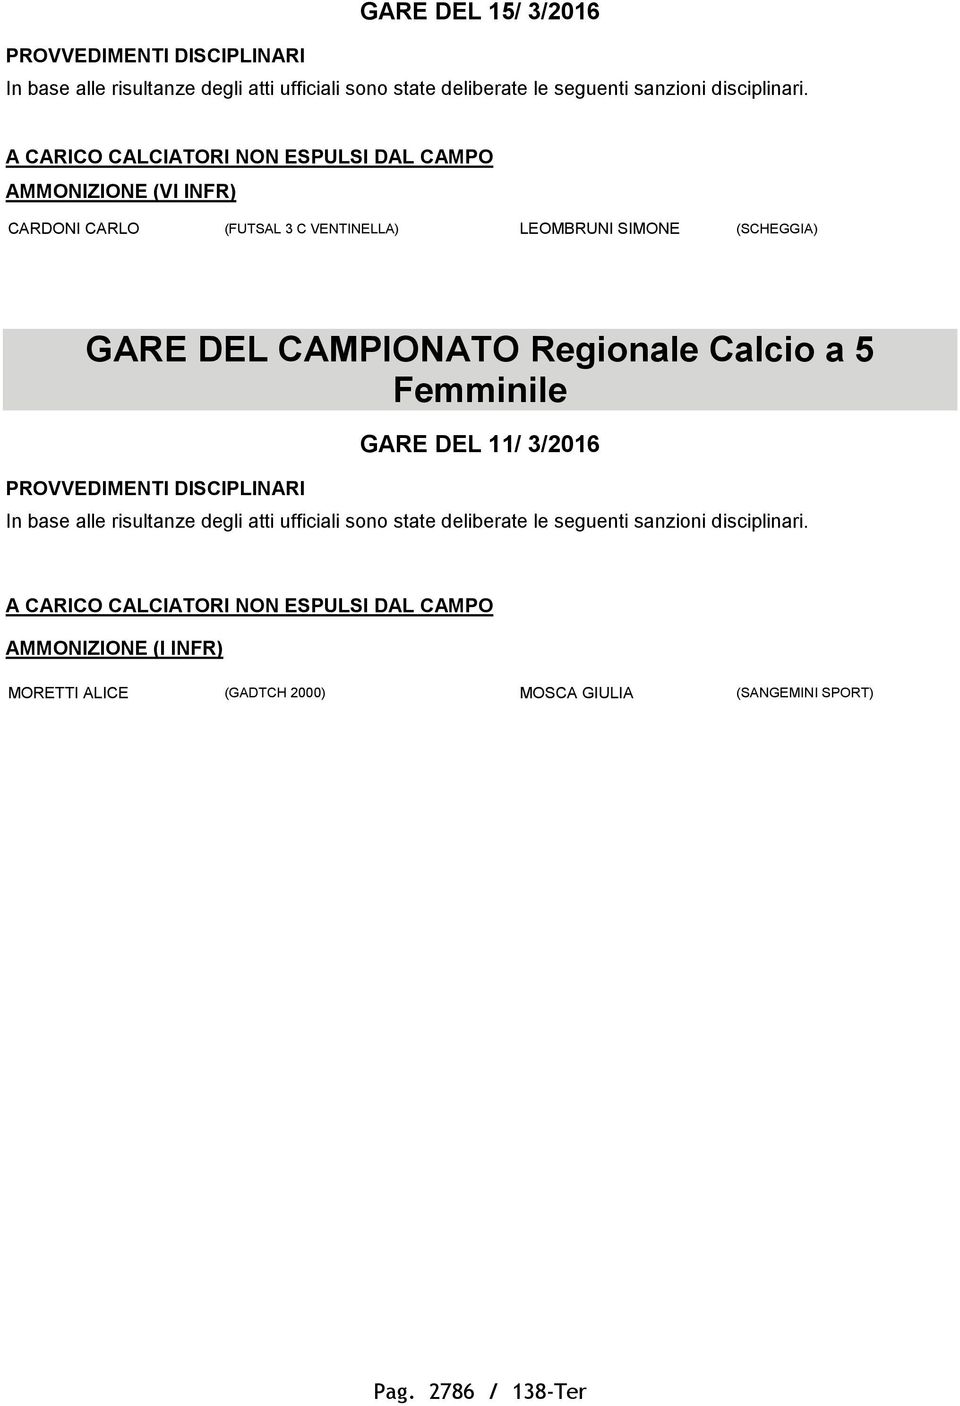 Calcio a 5 Femminile PROVVEDIMENTI DISCIPLINARI GARE DEL 11/ 3/2016 AMMONIZIONE (I